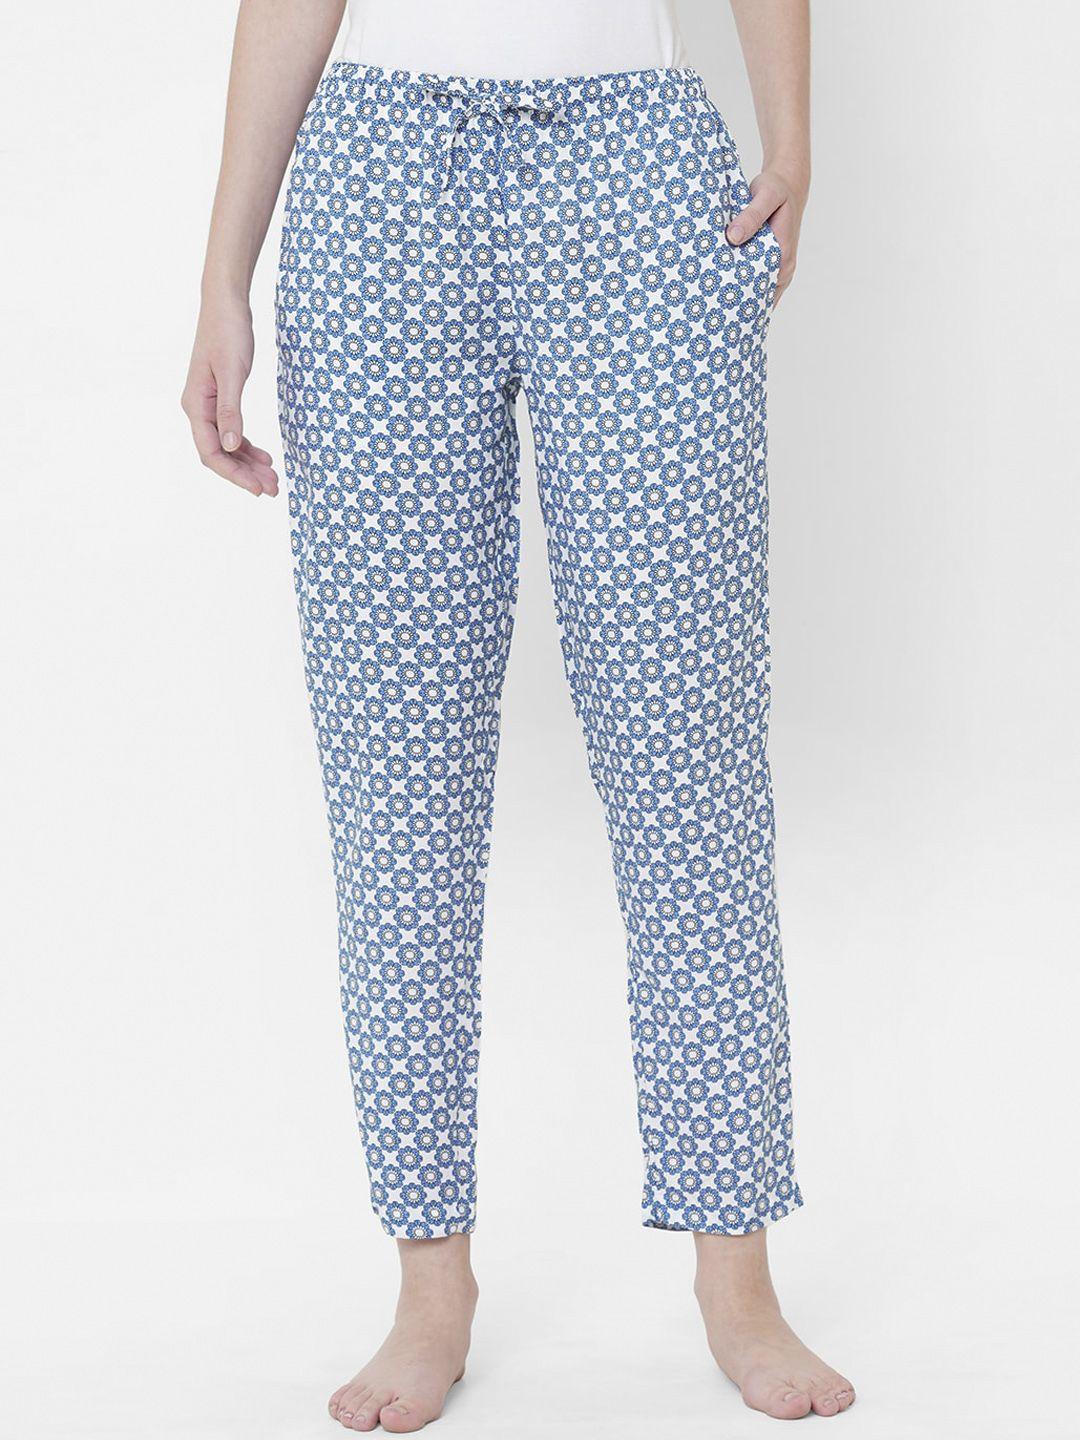 urban scottish women blue & white printed lounge pants